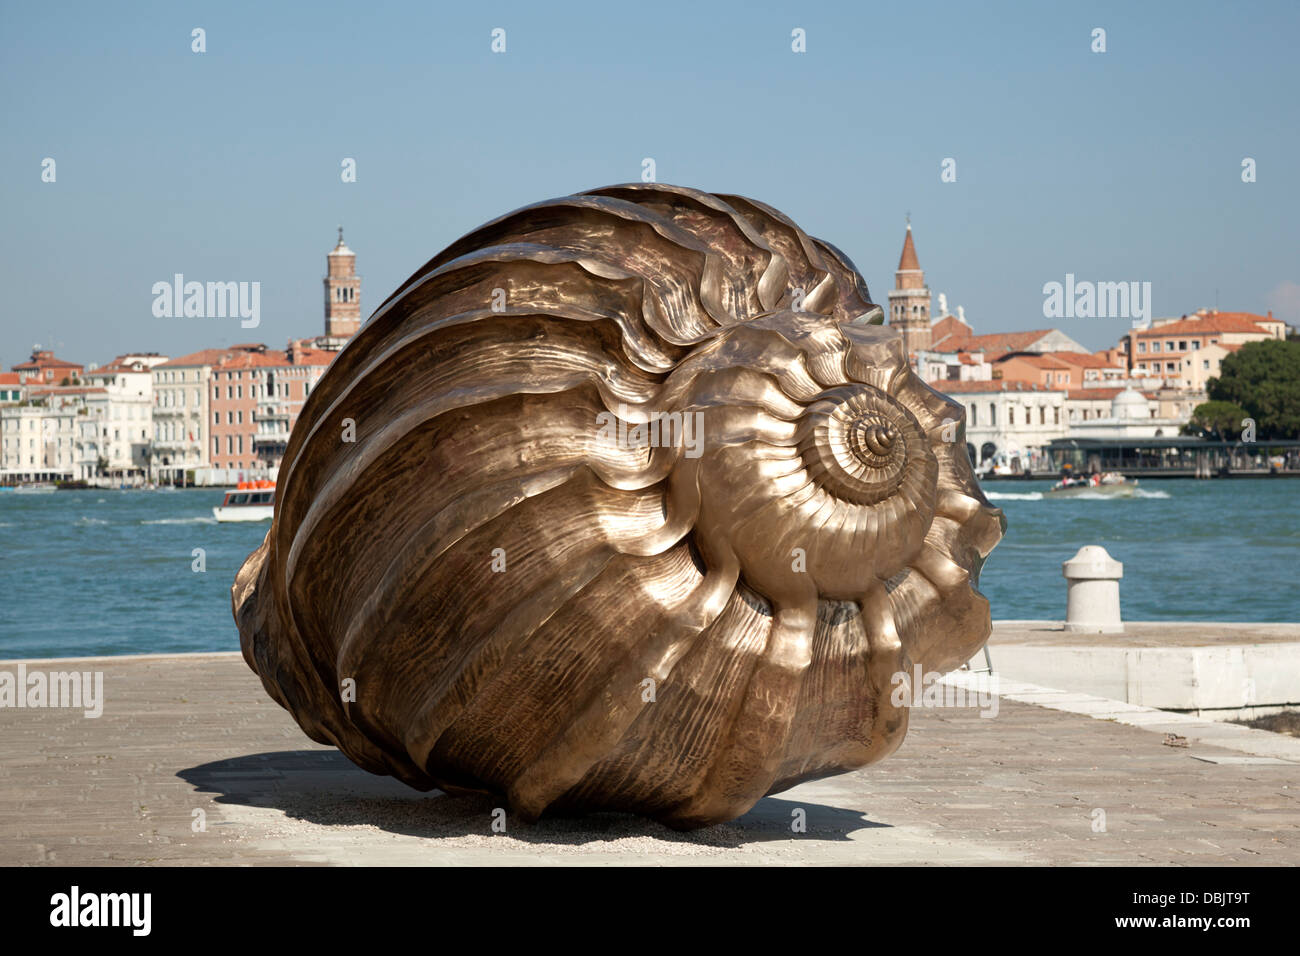 Un M.Quinn la très grande sculpture en bronze (harpe). 55e Biennale de Venise. Sculpture de bronze très agrandie (harpe) de M.Quinn. Banque D'Images